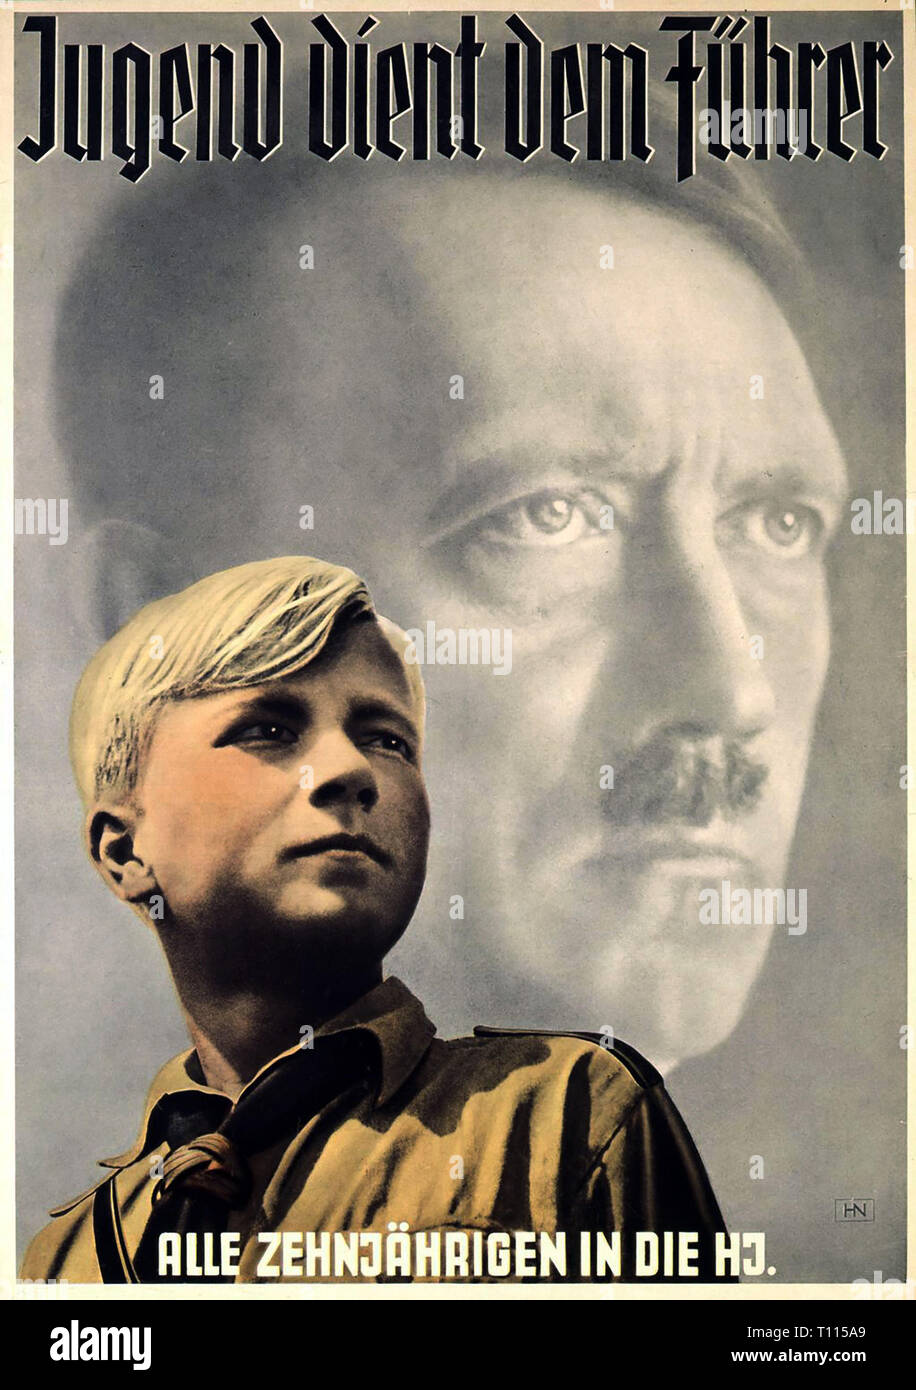 Le nazisme / National-socialisme, les organisations jeunesse hitlérienne, Section Junior, une affiche "Jugend dient dem Führer" (La jeunesse est au service du führer), design : Hein Neuner (1910 - 1984), 1939, Additional-Rights Clearance-Info-Not-Available- Banque D'Images